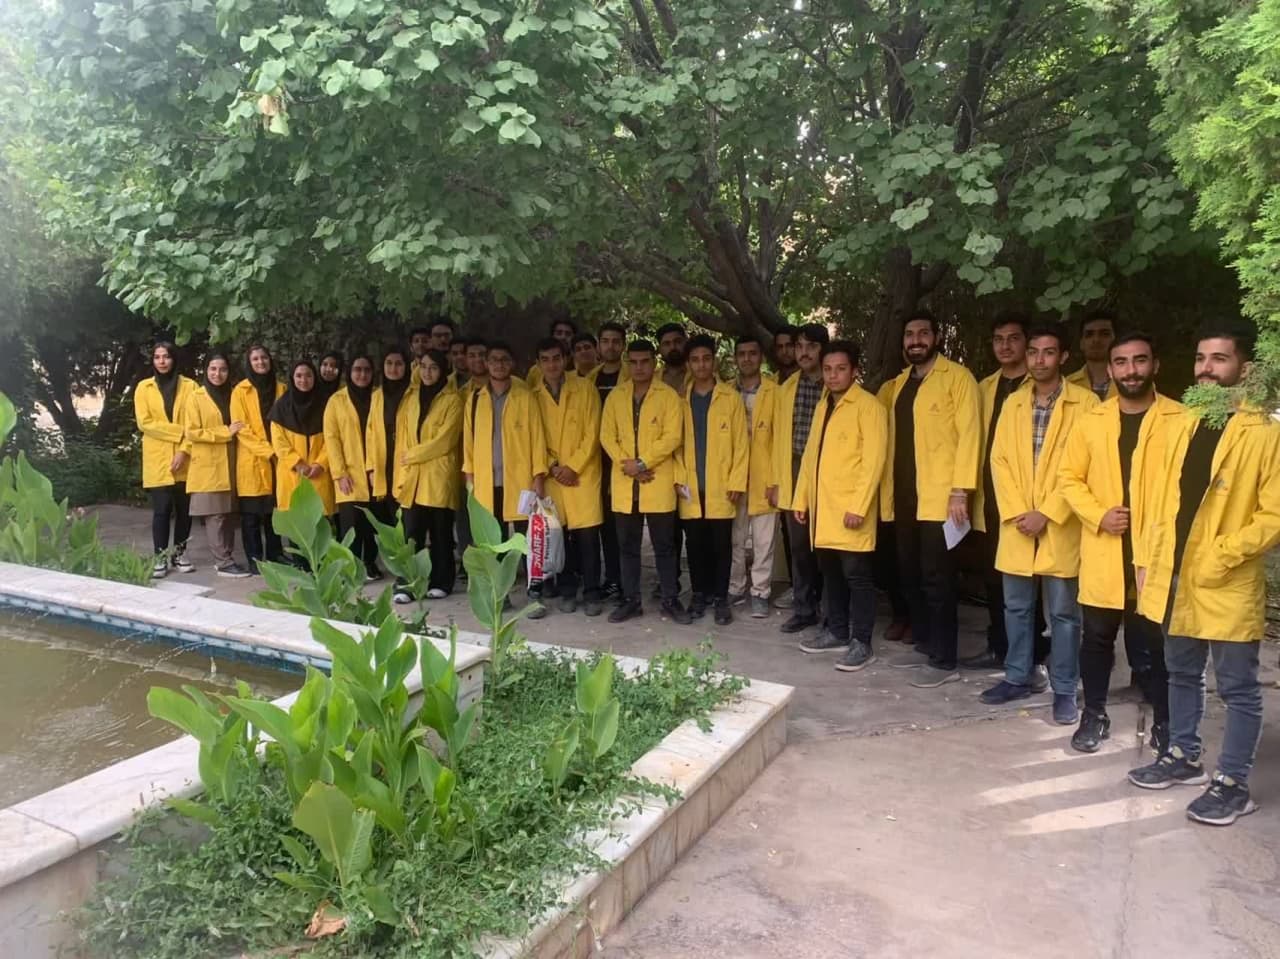  ایجاد فرصت کارآموزی دانشجویان کشور توسط فولاد آلیاژی ایران